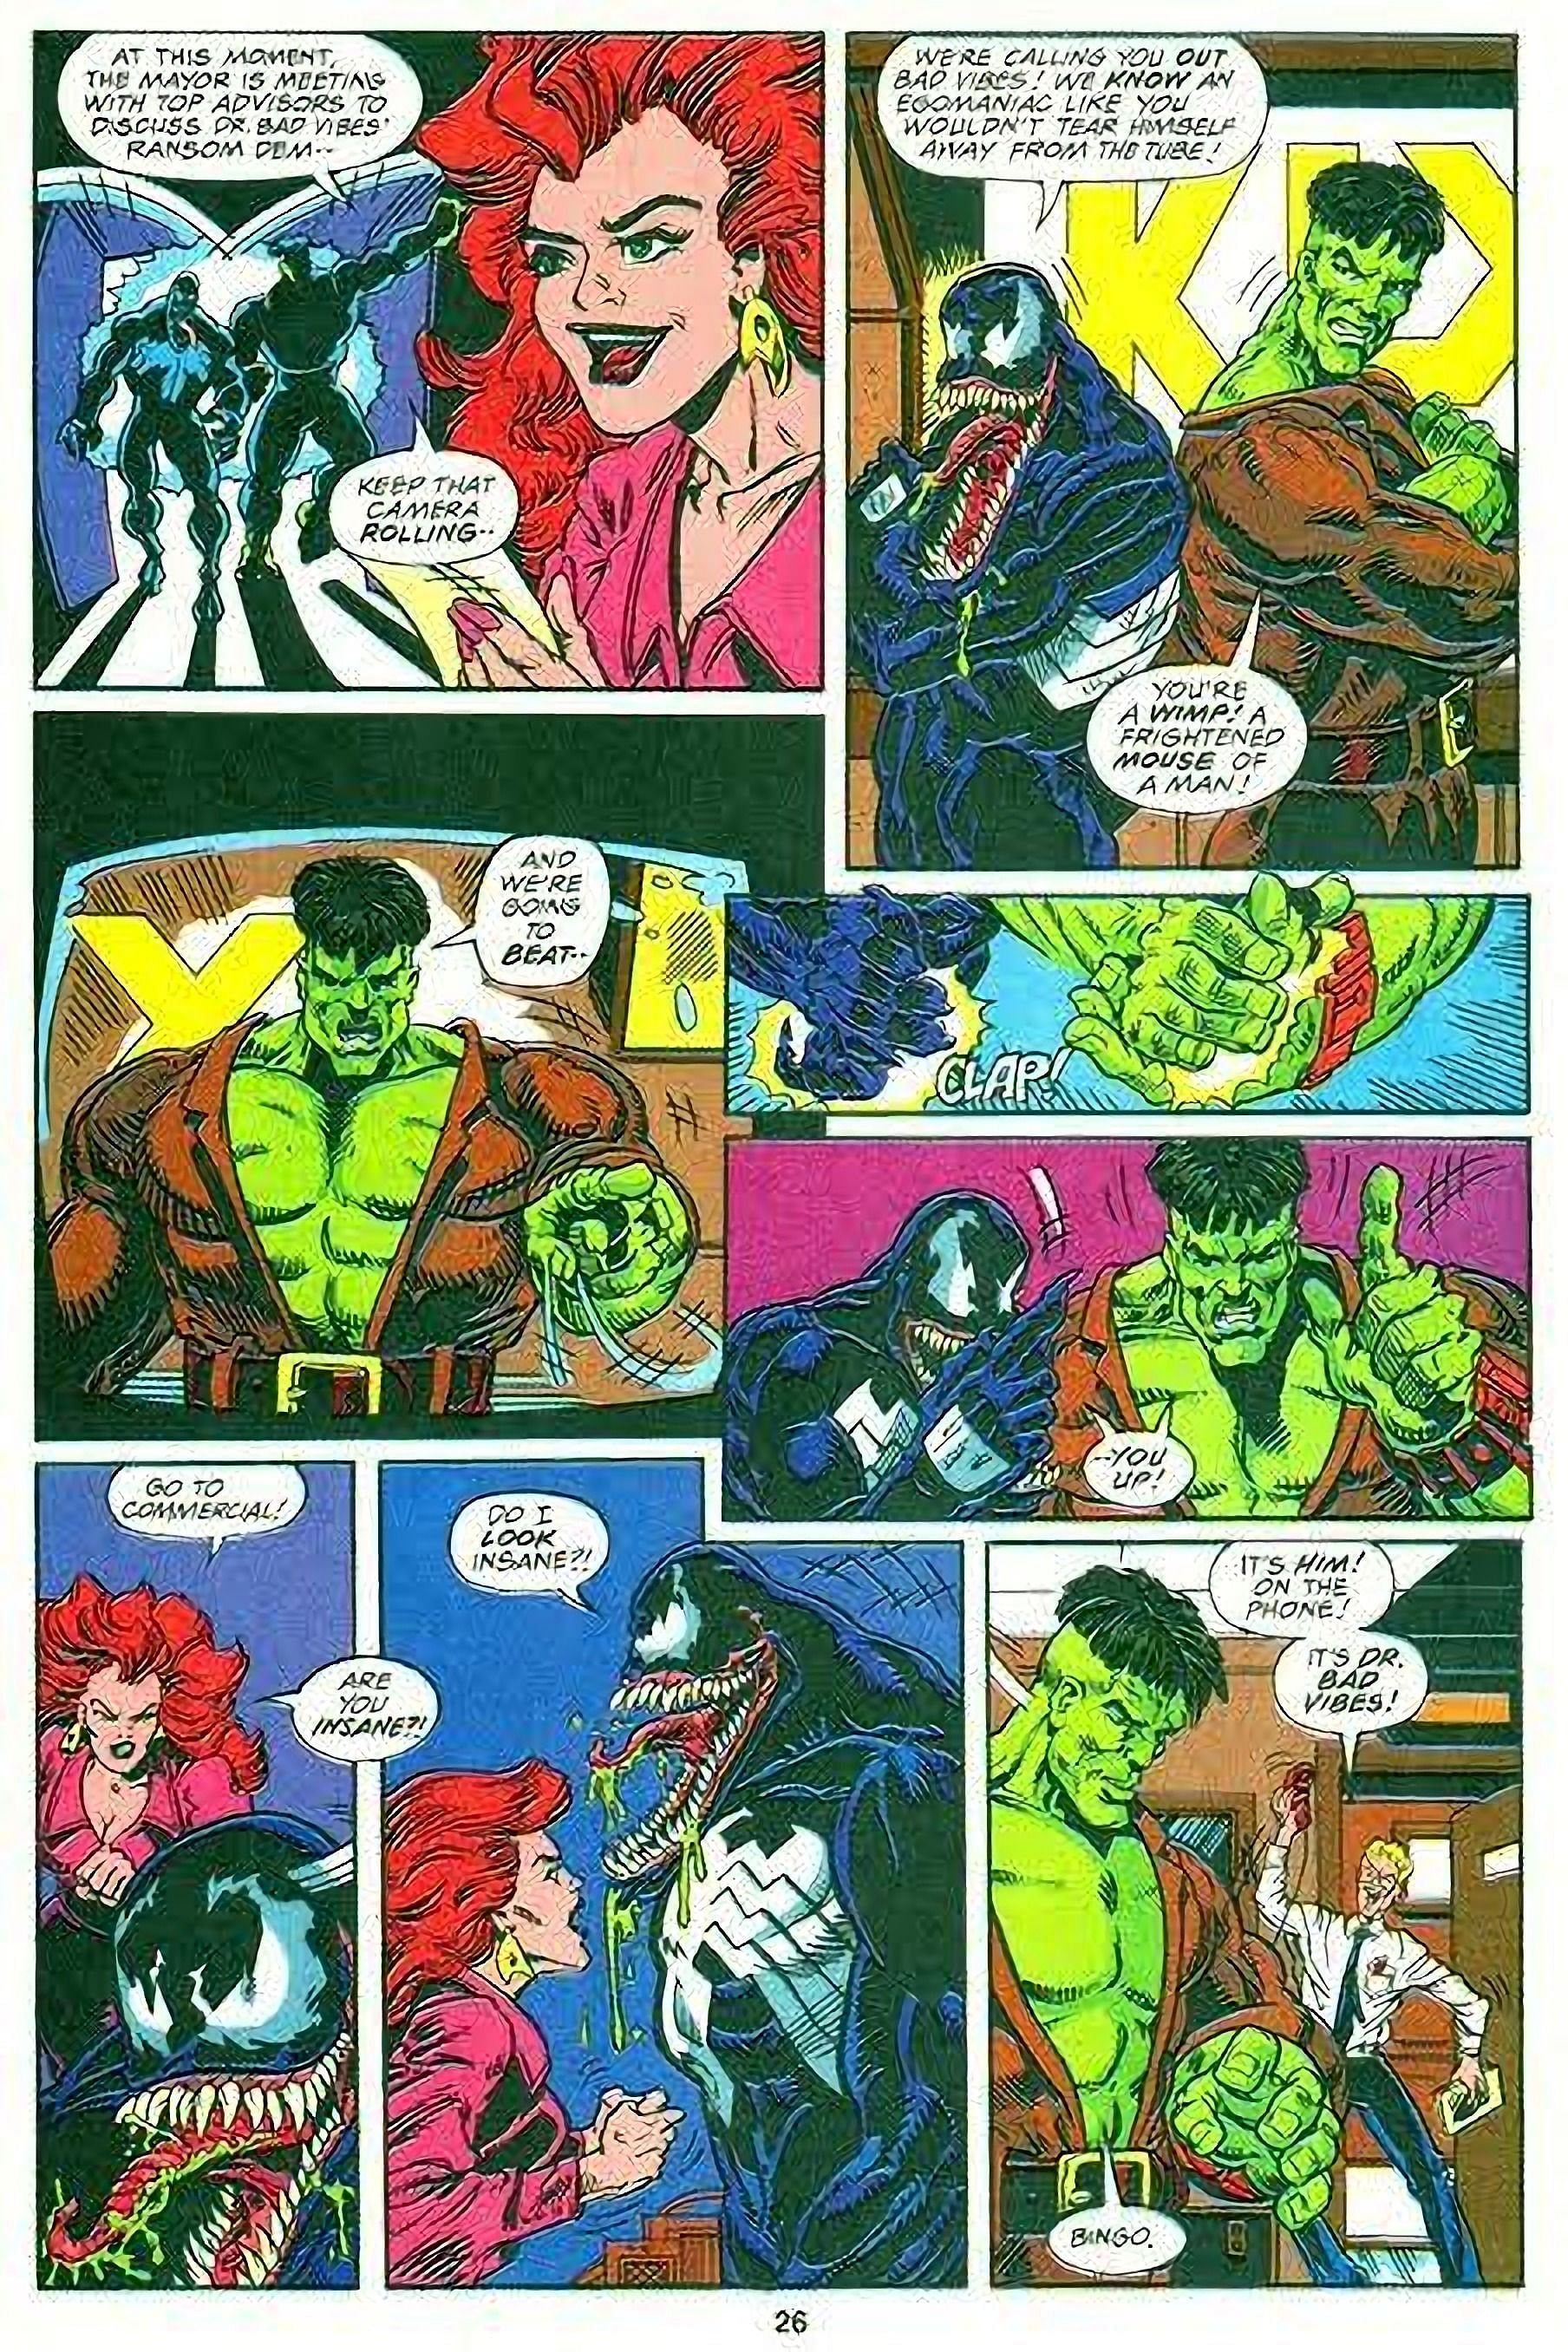 The Lethal Protector and Hulk (Image via Marvel Comics)